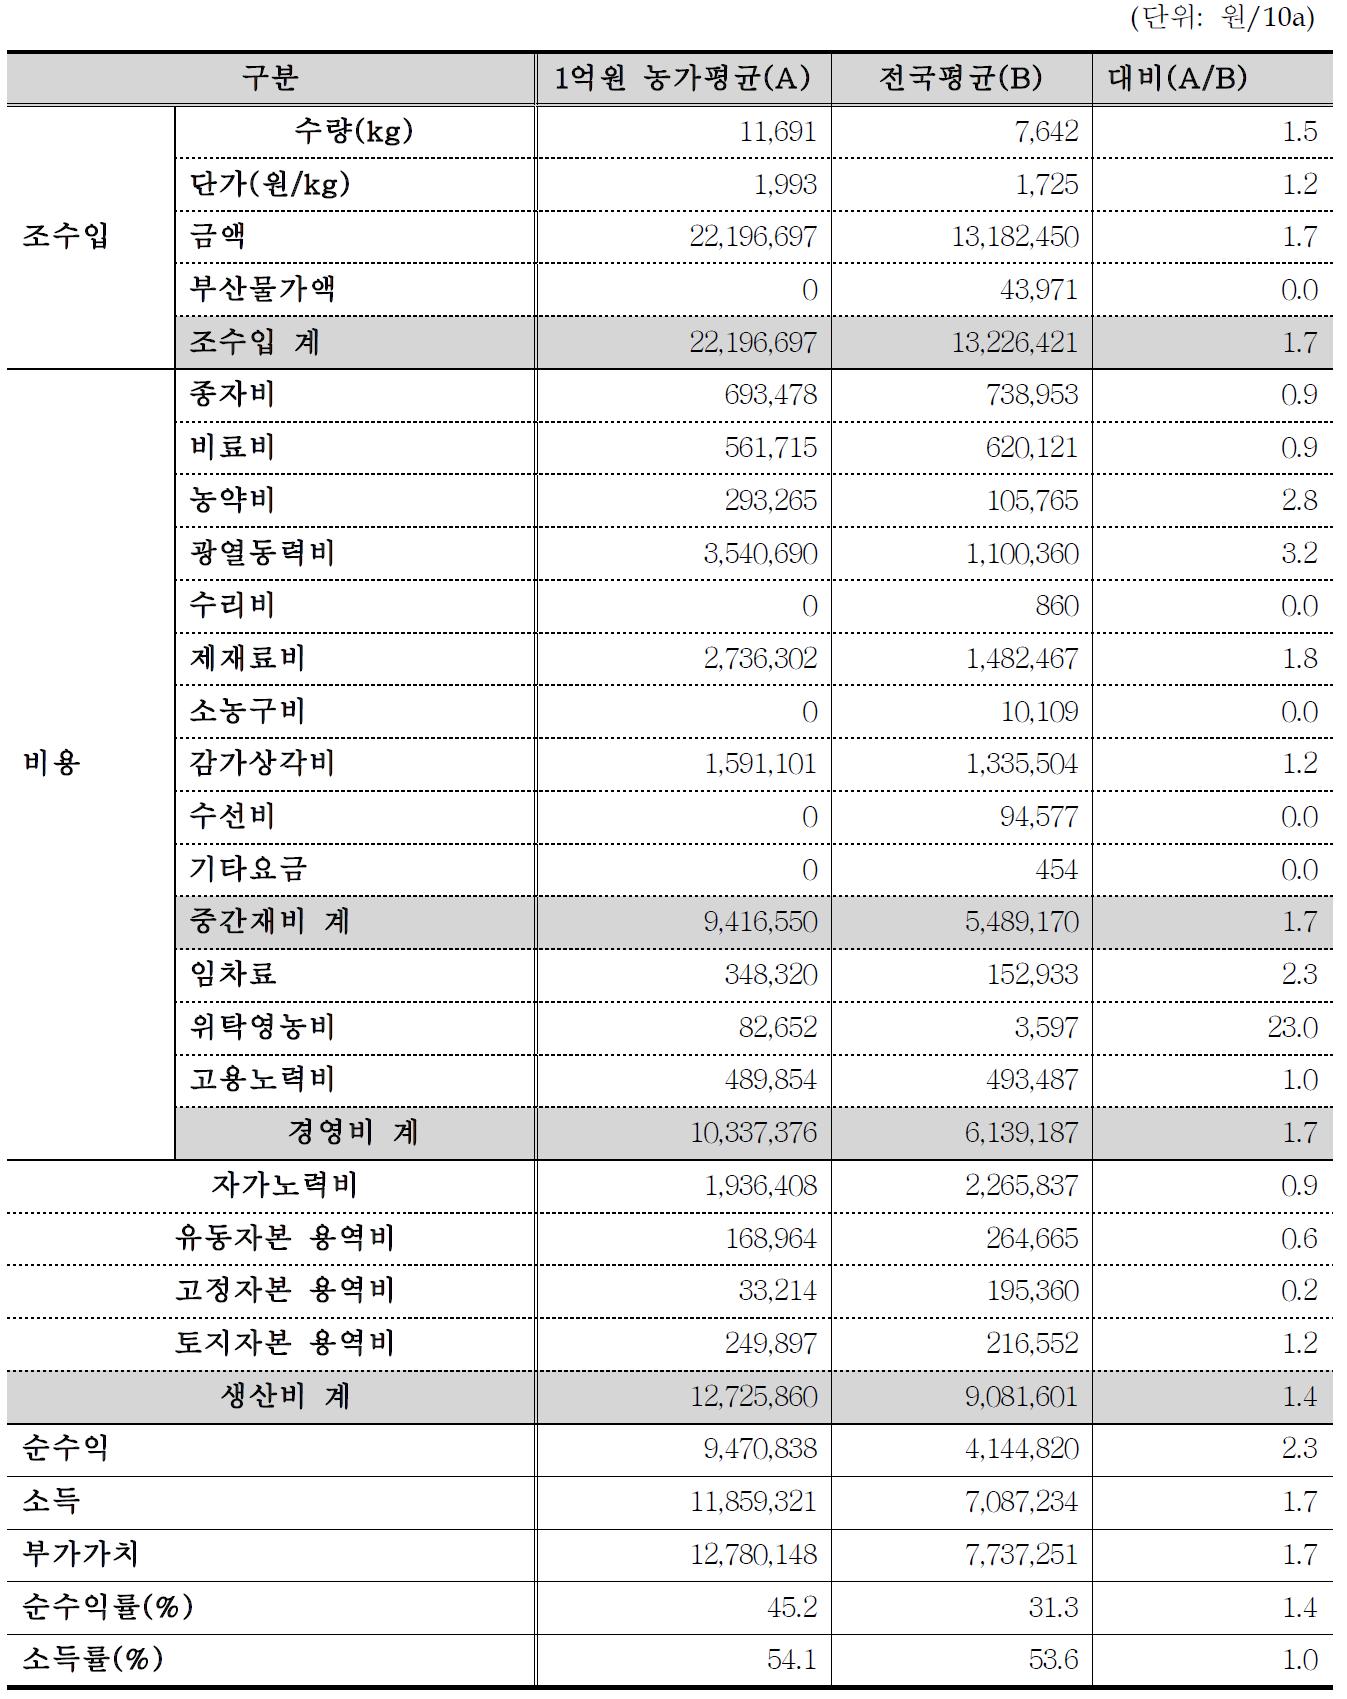 농업소득 1억원 토마토 경영성과표